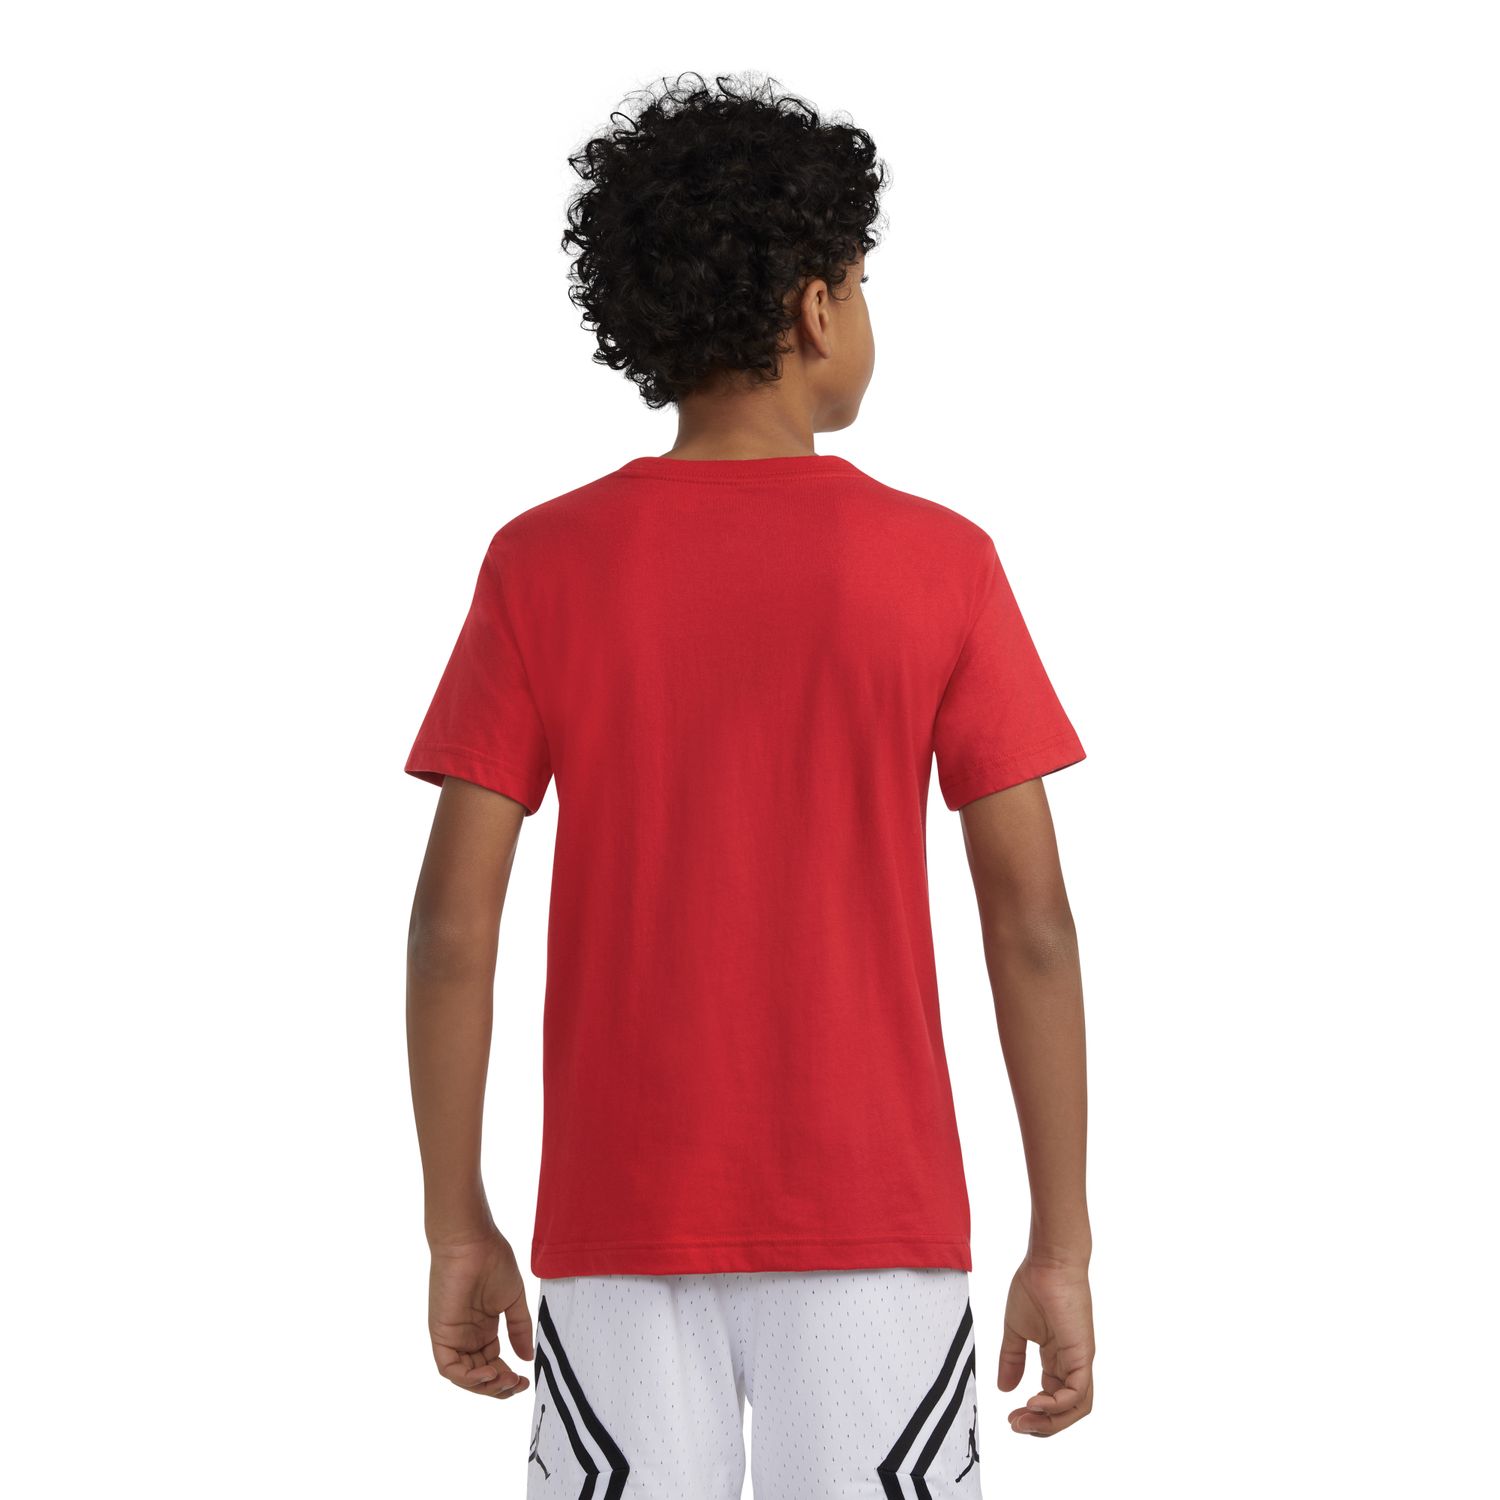 Jordan Kinder T-Shirt